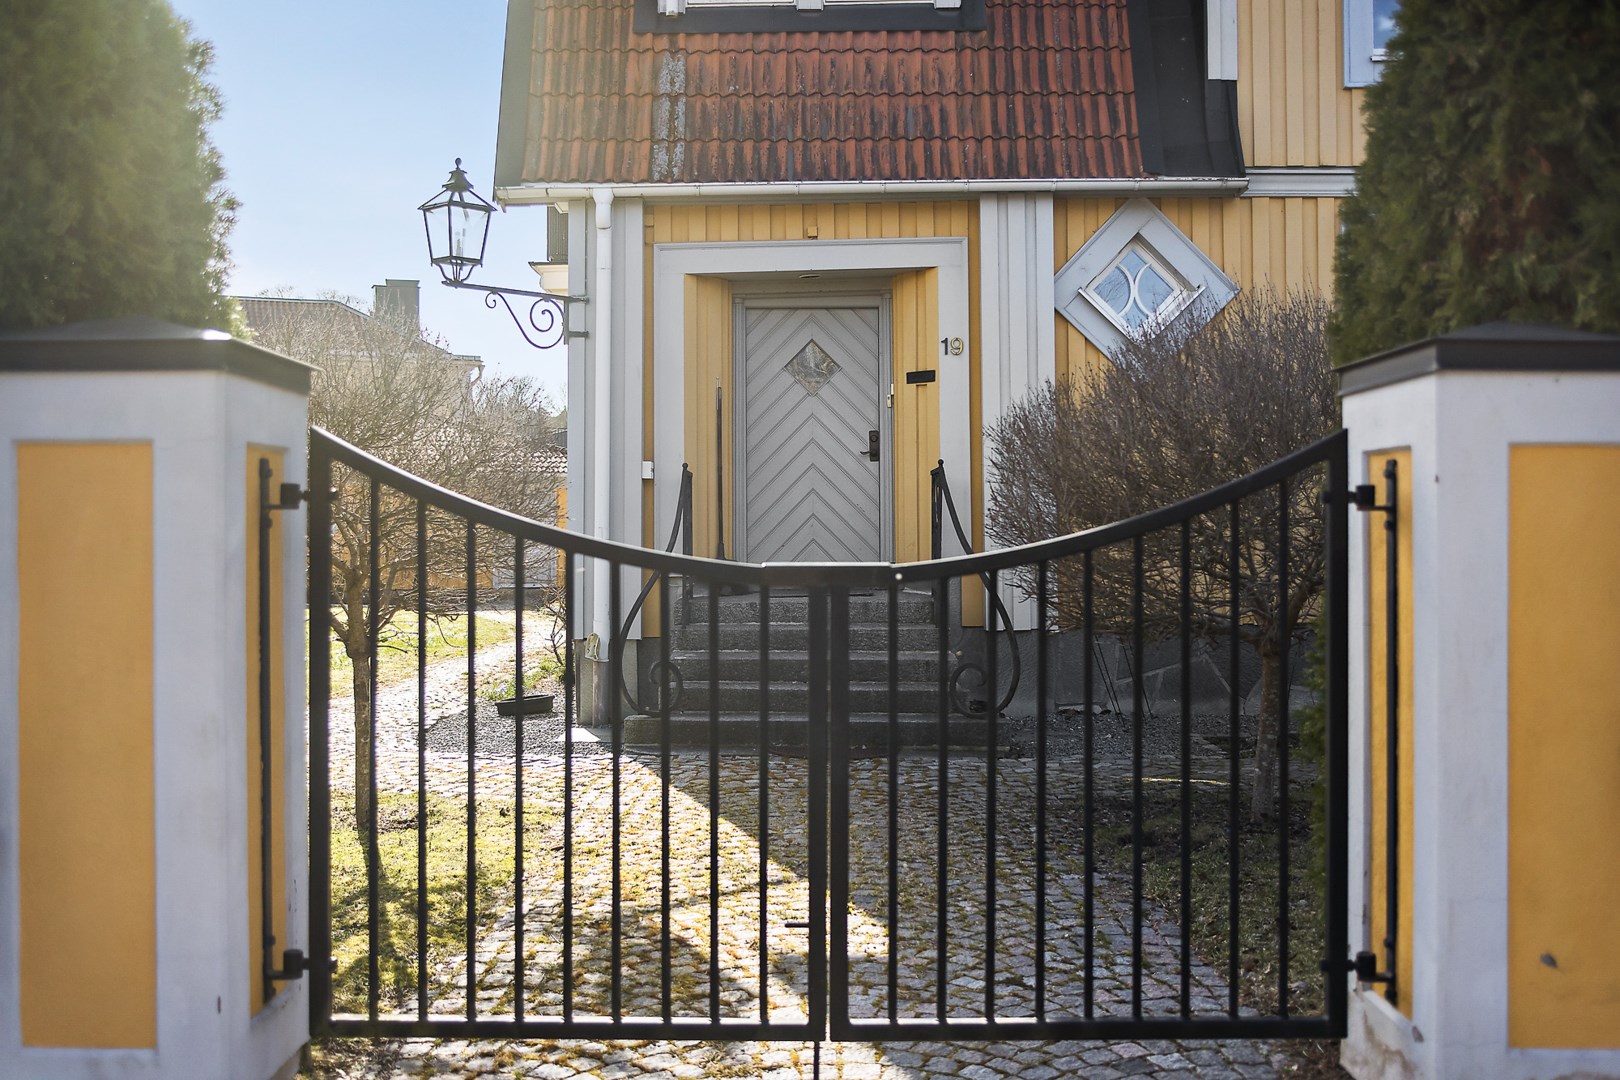 Bostadsbild från Villavägen 19, Kommande i Kåbo, Uppsala